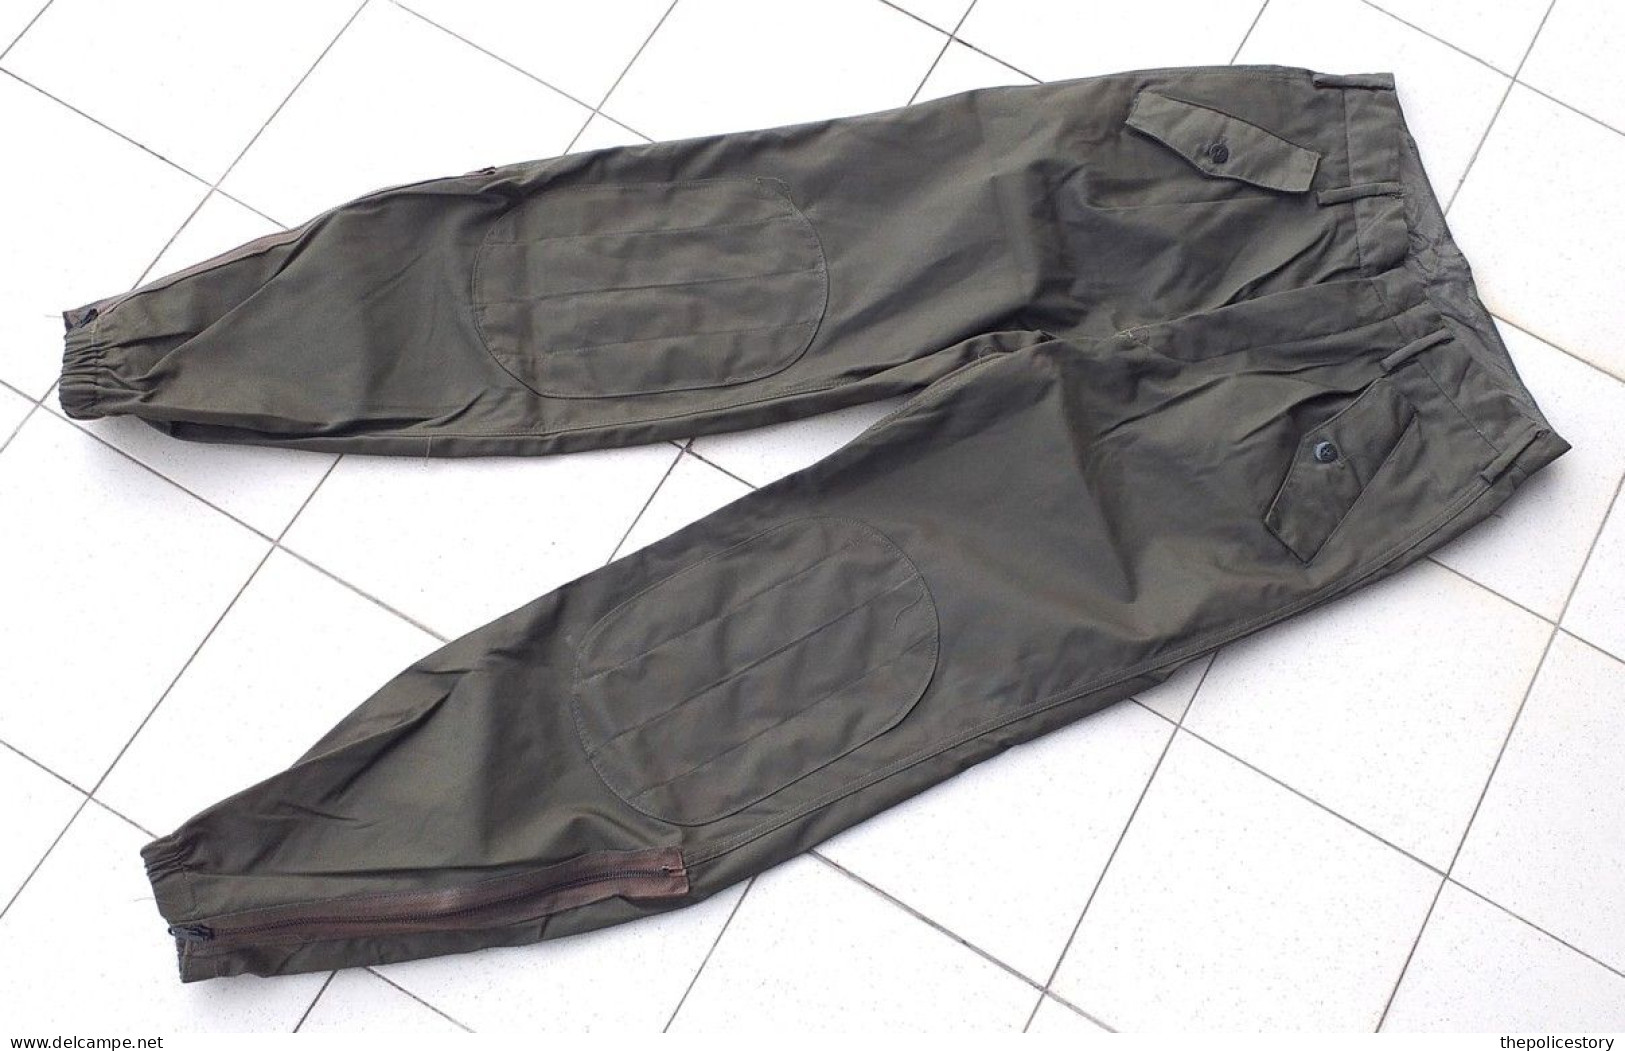 Giacca pantaloni mimetica verde NATO E.I. tg. 44 del 1984 nuova originale etichettata